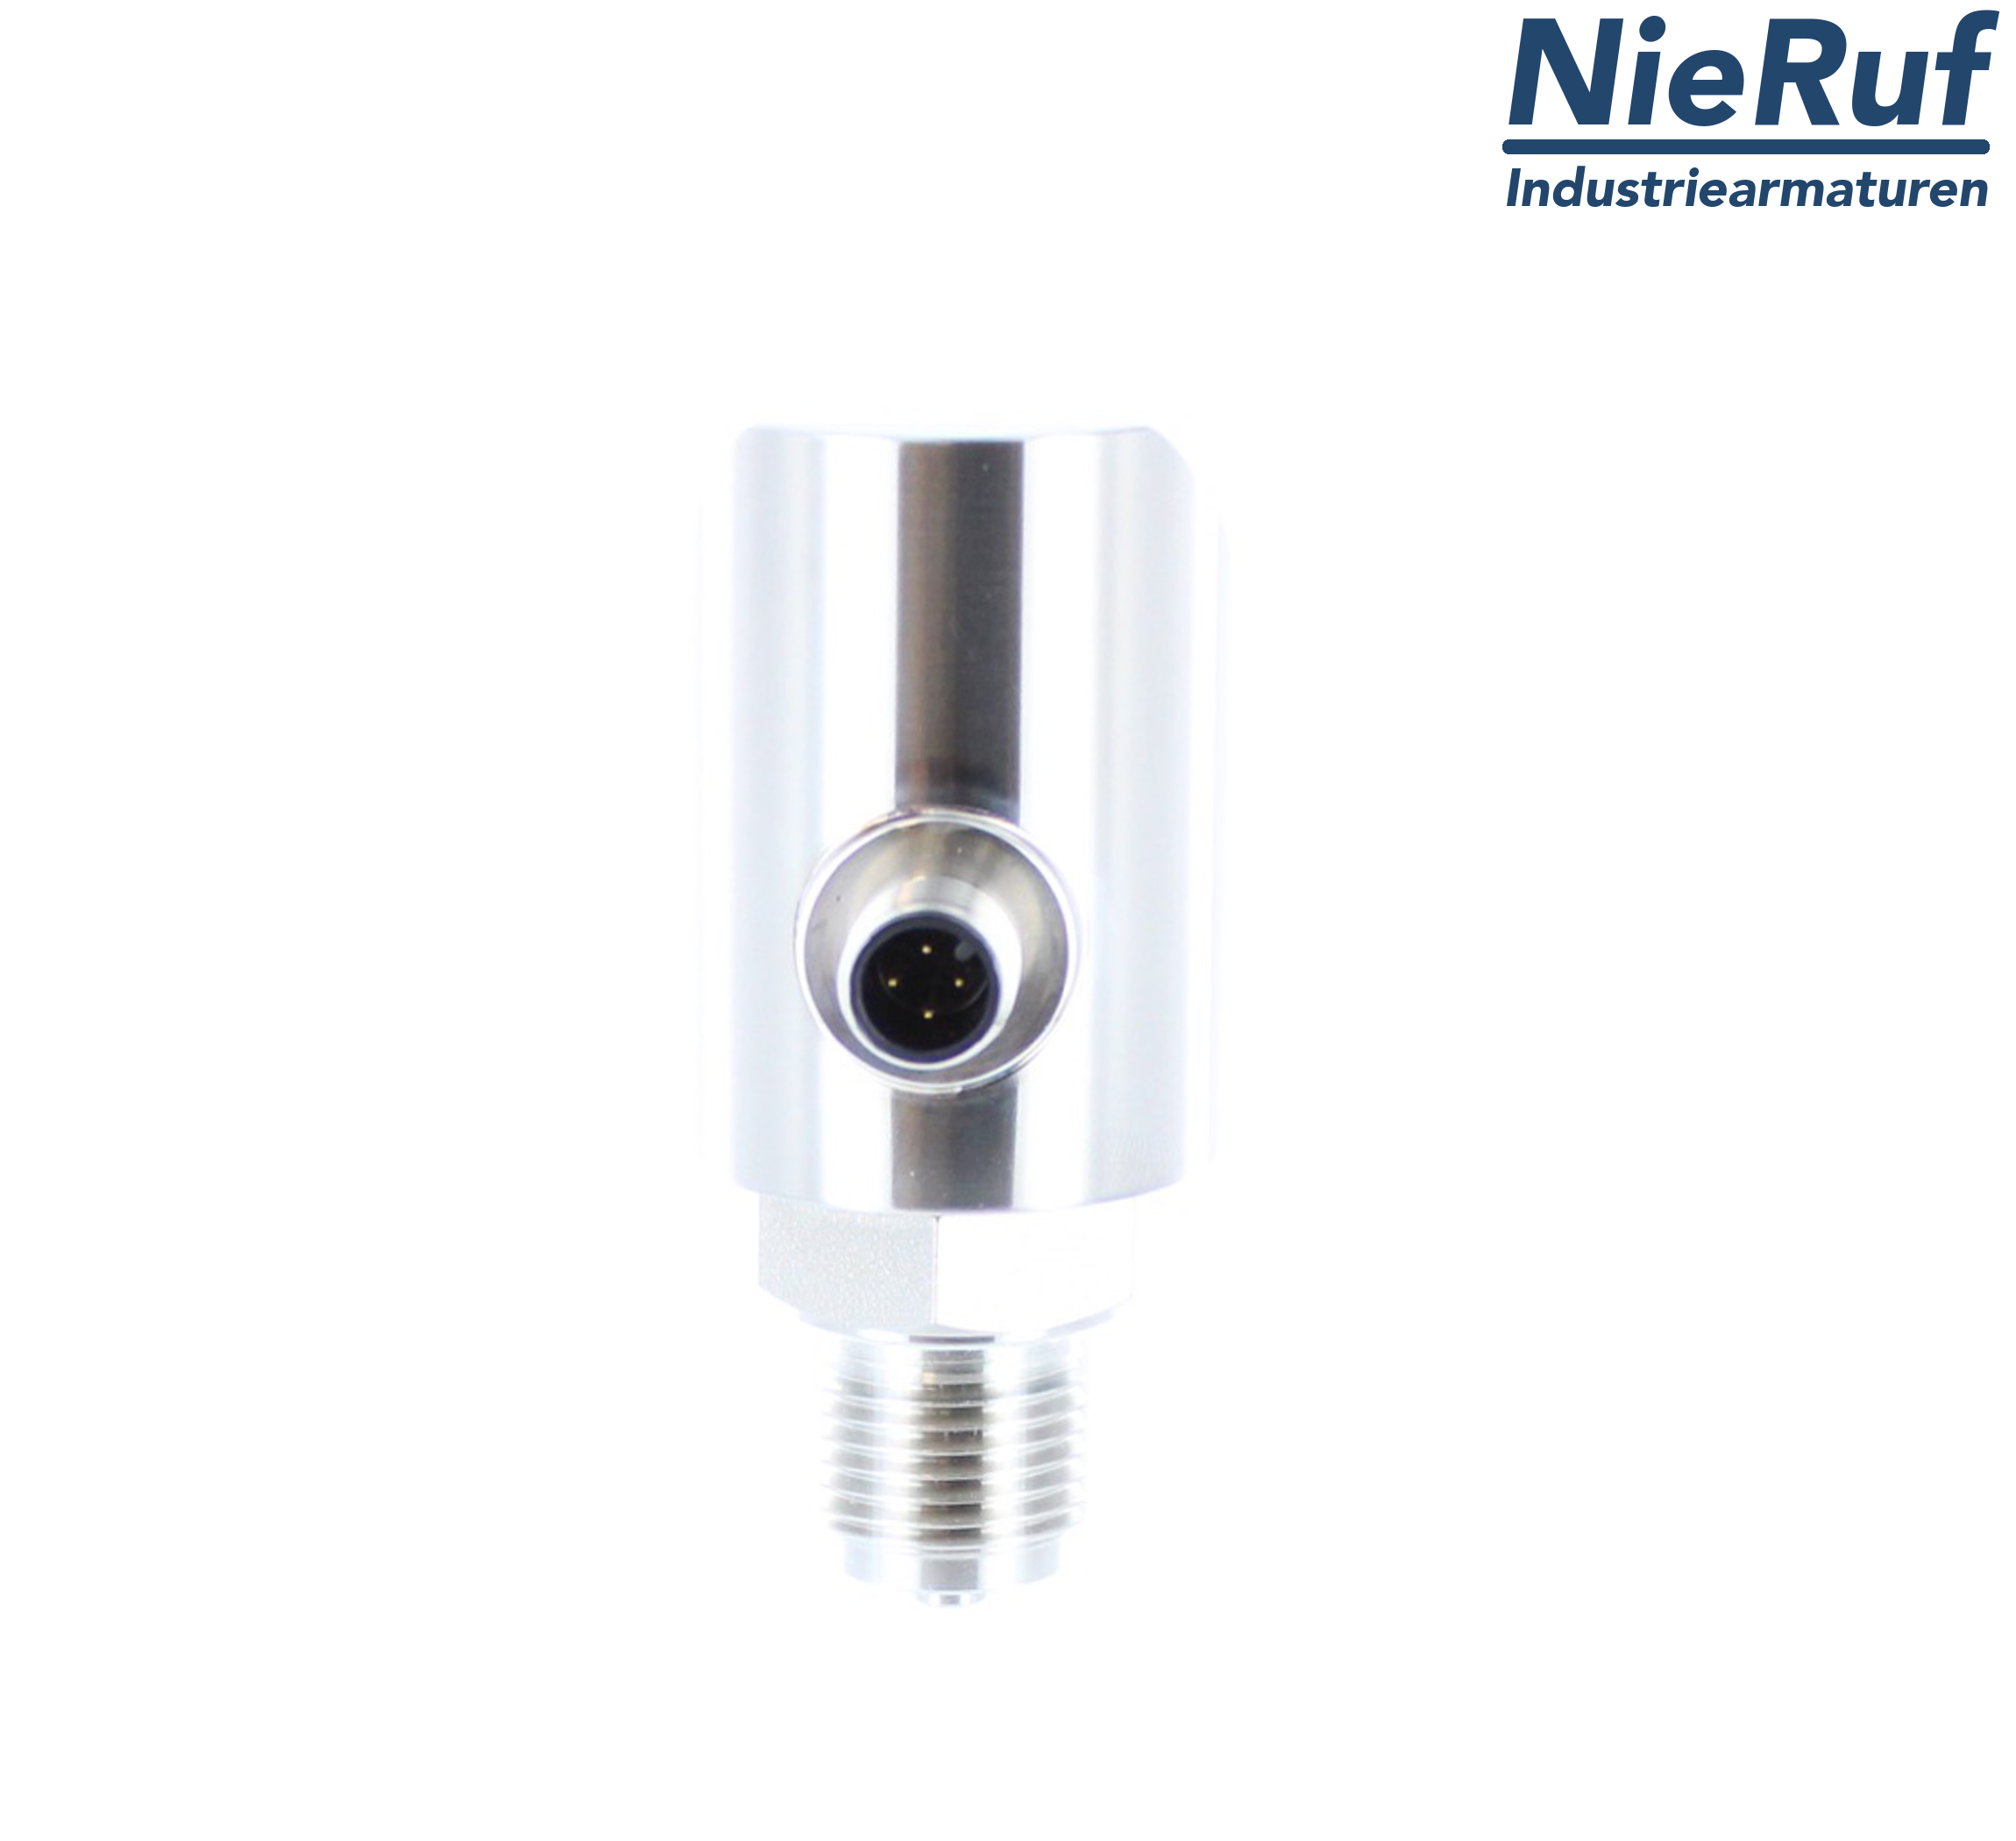 digital pressure sensor G 1/4" B 5-wire: 2xPNP, 1x4 - 20mA FPM 0,0 - 160,0 bar